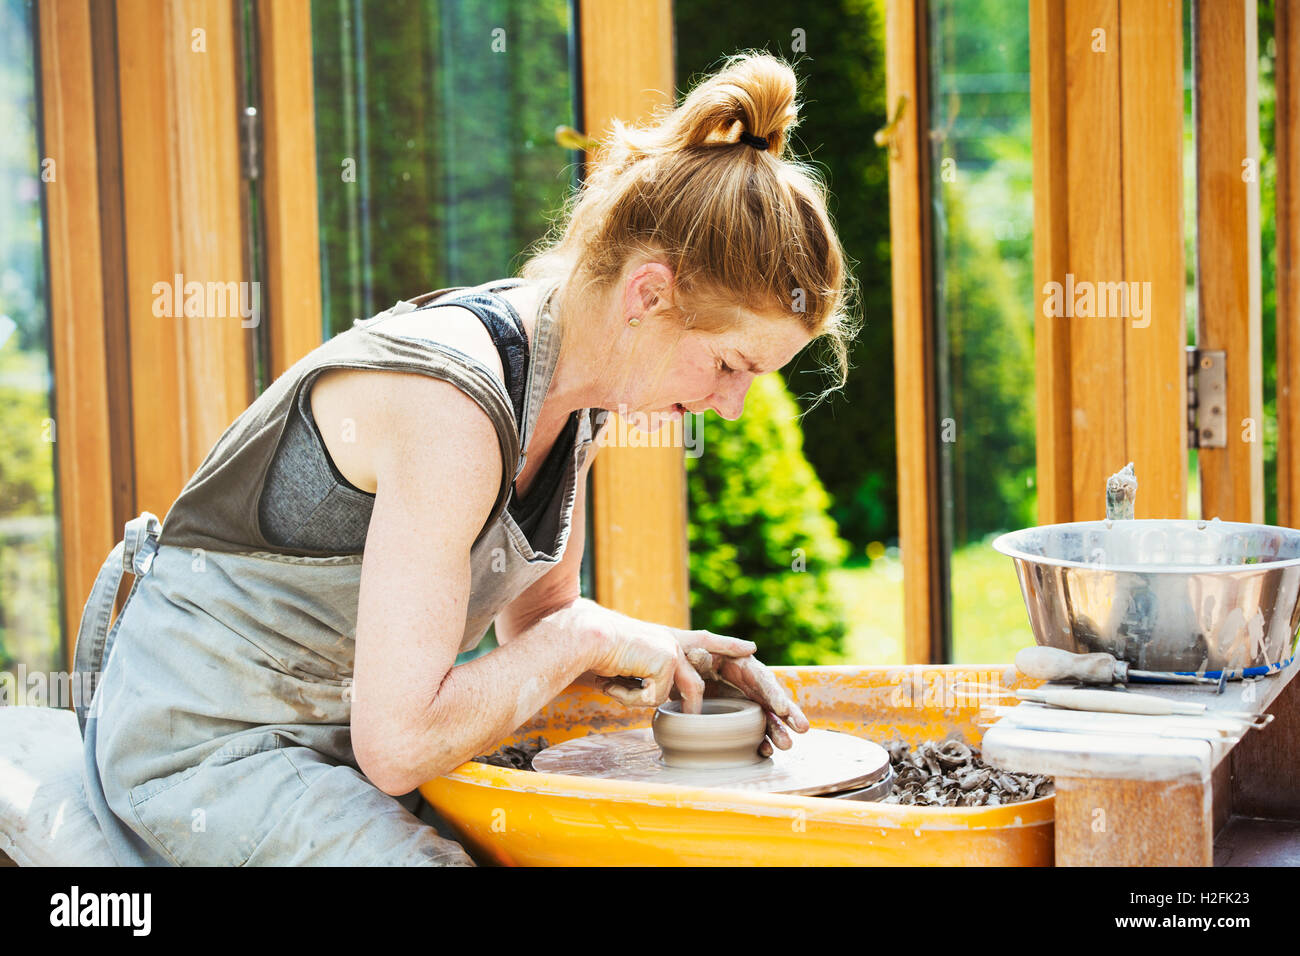 Eine Frau Töpfer arbeiten Ton auf einer Töpferscheibe in ihrer Werkstatt. Stockfoto